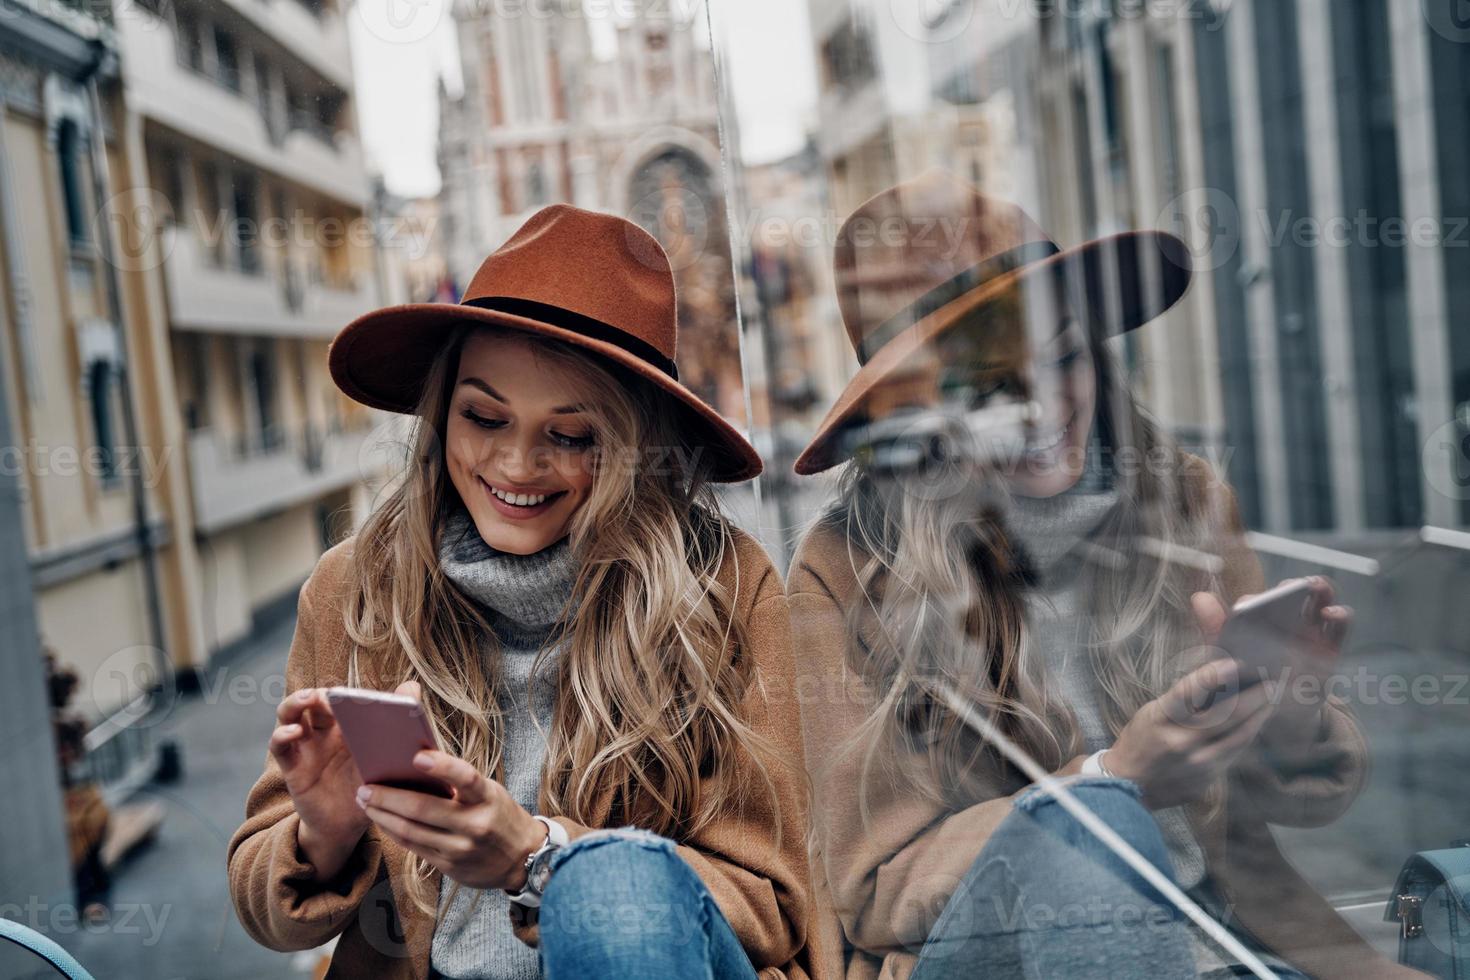 permanecendo conectado. mulher jovem e atraente de chapéu e casaco usando seu telefone inteligente enquanto passa um tempo despreocupado na cidade foto